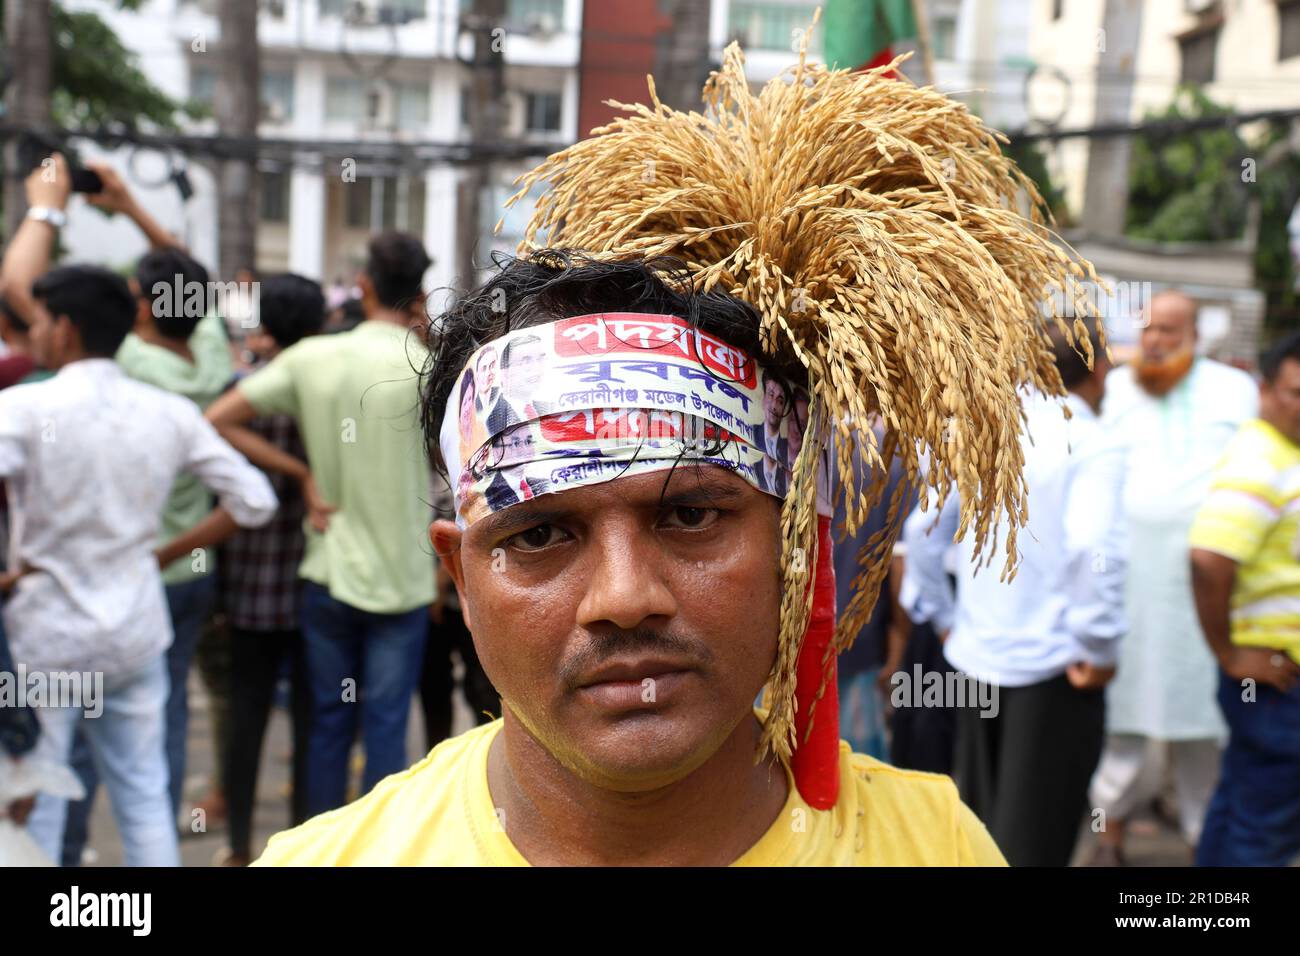 Dhaka, Dhaka, Bangladesch. 13. Mai 2023. Die Bangladesche Nationalistische Partei (BNP) protestierte vor der BNP-Zentrale in Nayapaltan und verlangte 10 Punkte, darunter die Freilassung ihres Vorsitzenden Begum Khaleda Zia, falsche Fälle und willkürliche Verhaftung. Tausende von Unterstützern, darunter hochrangige Parteivorsitzende, nahmen daran Teil. (Kreditbild: © Syed Mahabubul Kader/ZUMA Press Wire) NUR REDAKTIONELLE VERWENDUNG! Nicht für den kommerziellen GEBRAUCH! Kredit: ZUMA Press, Inc./Alamy Live News Stockfoto